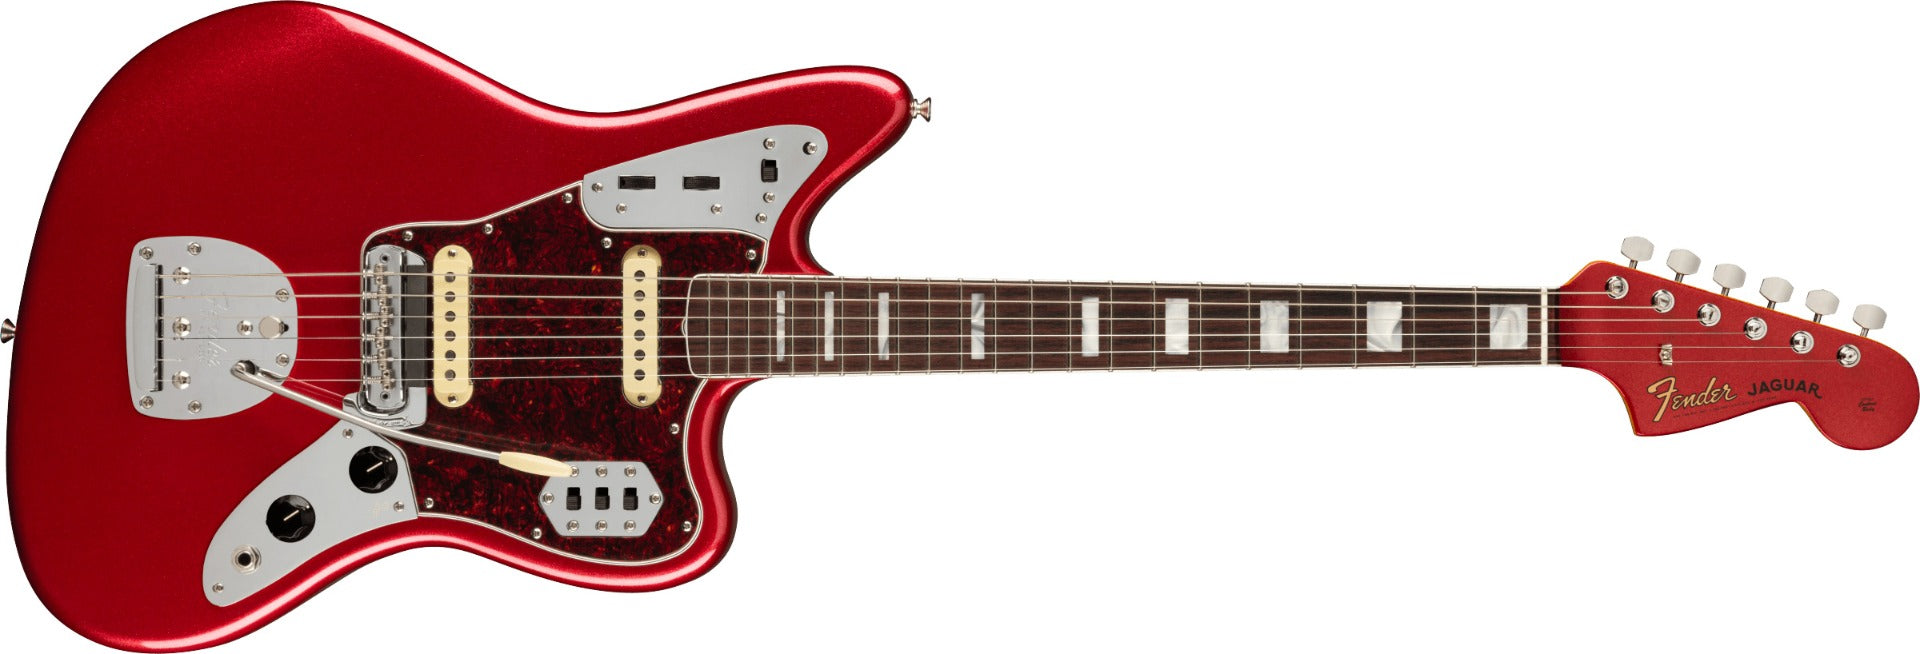 Fender 60th Anniversary Jaguar - Rosewood, Mystic Dakota Red view 2